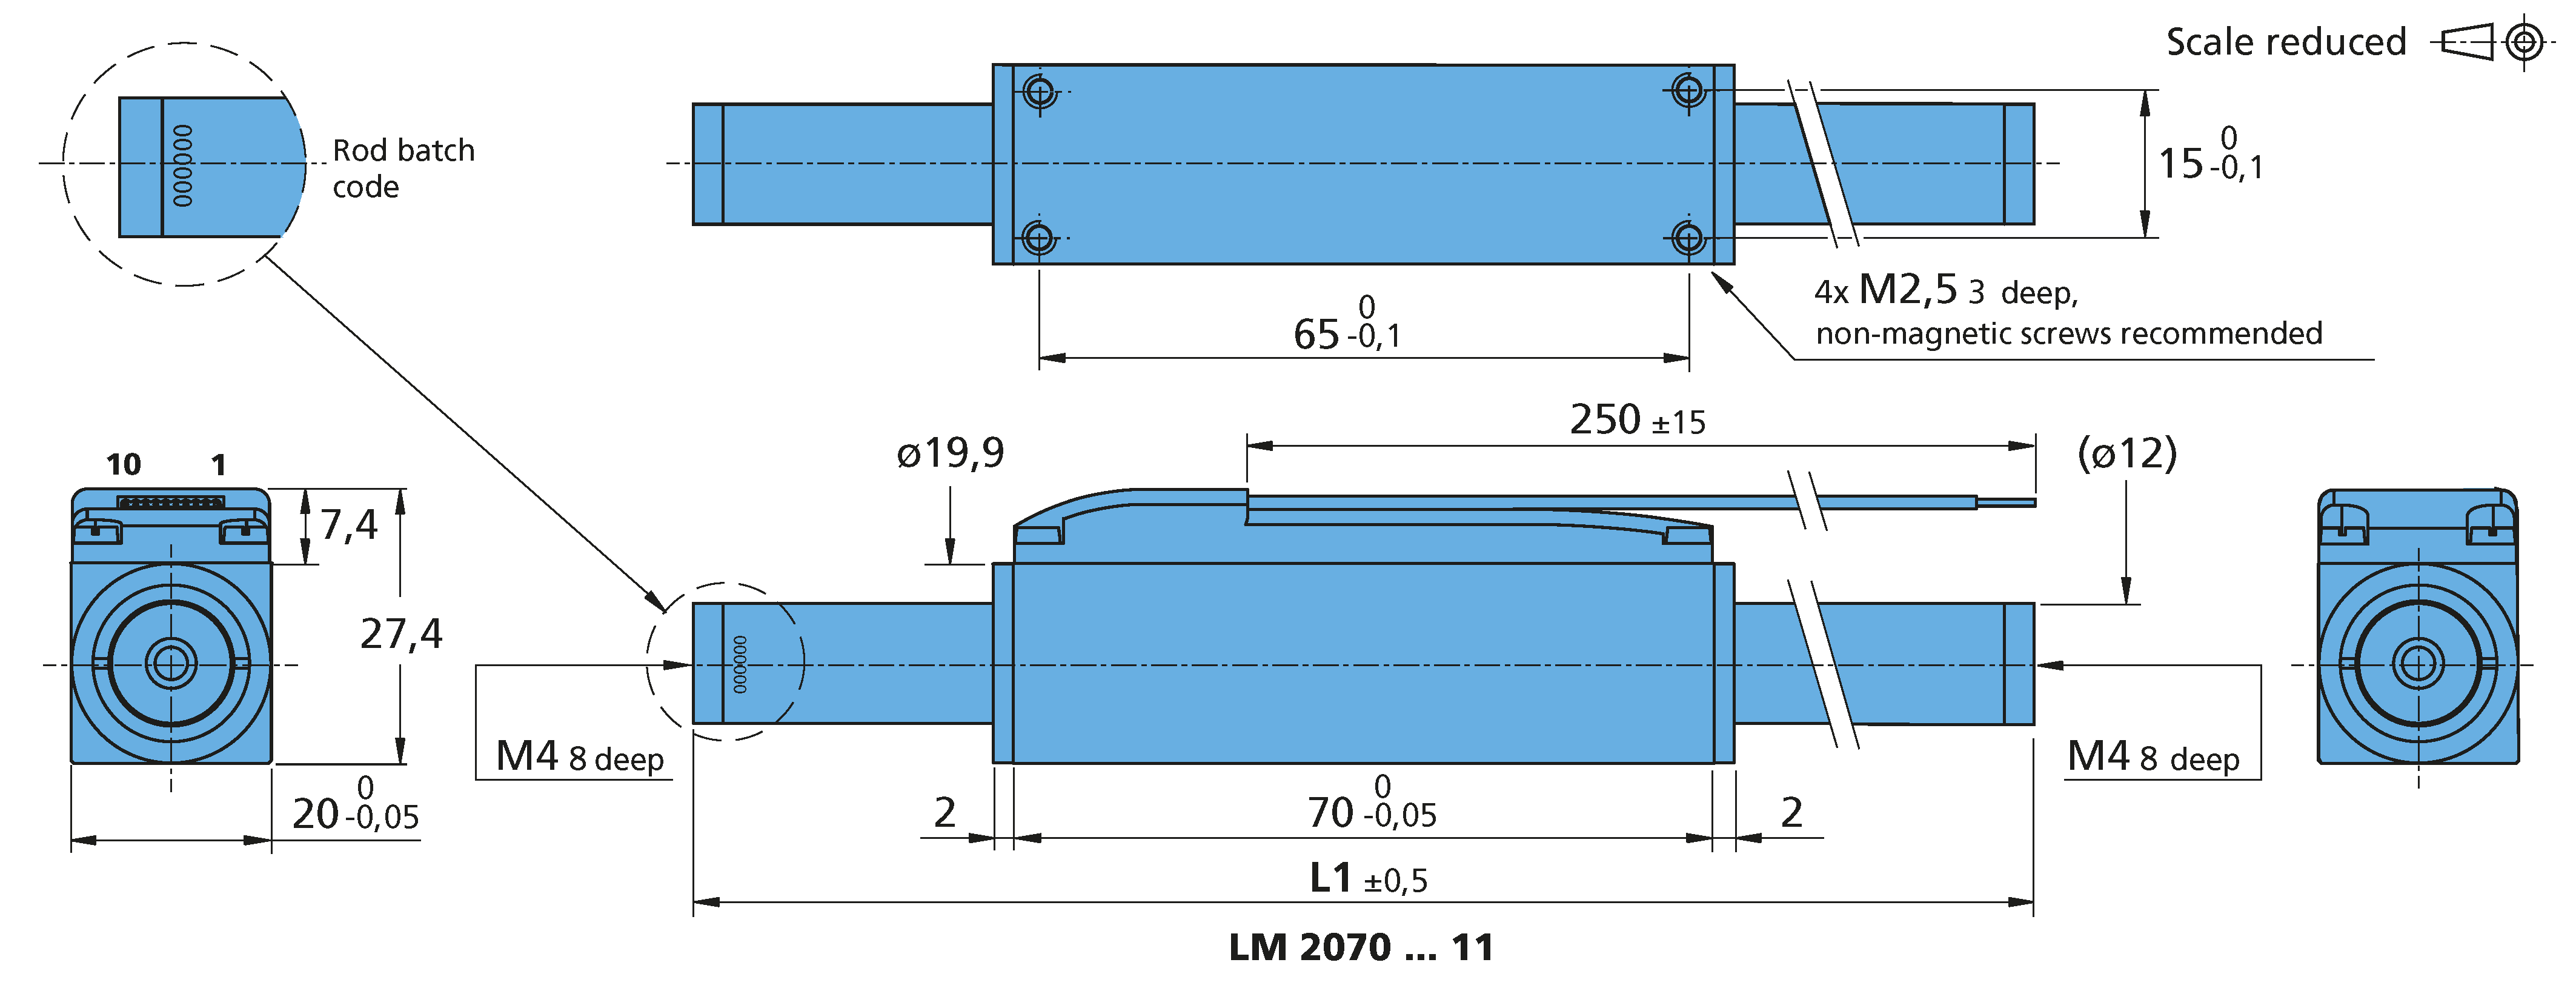 リニアDCサーボモータ Series LM 2070 ... 11